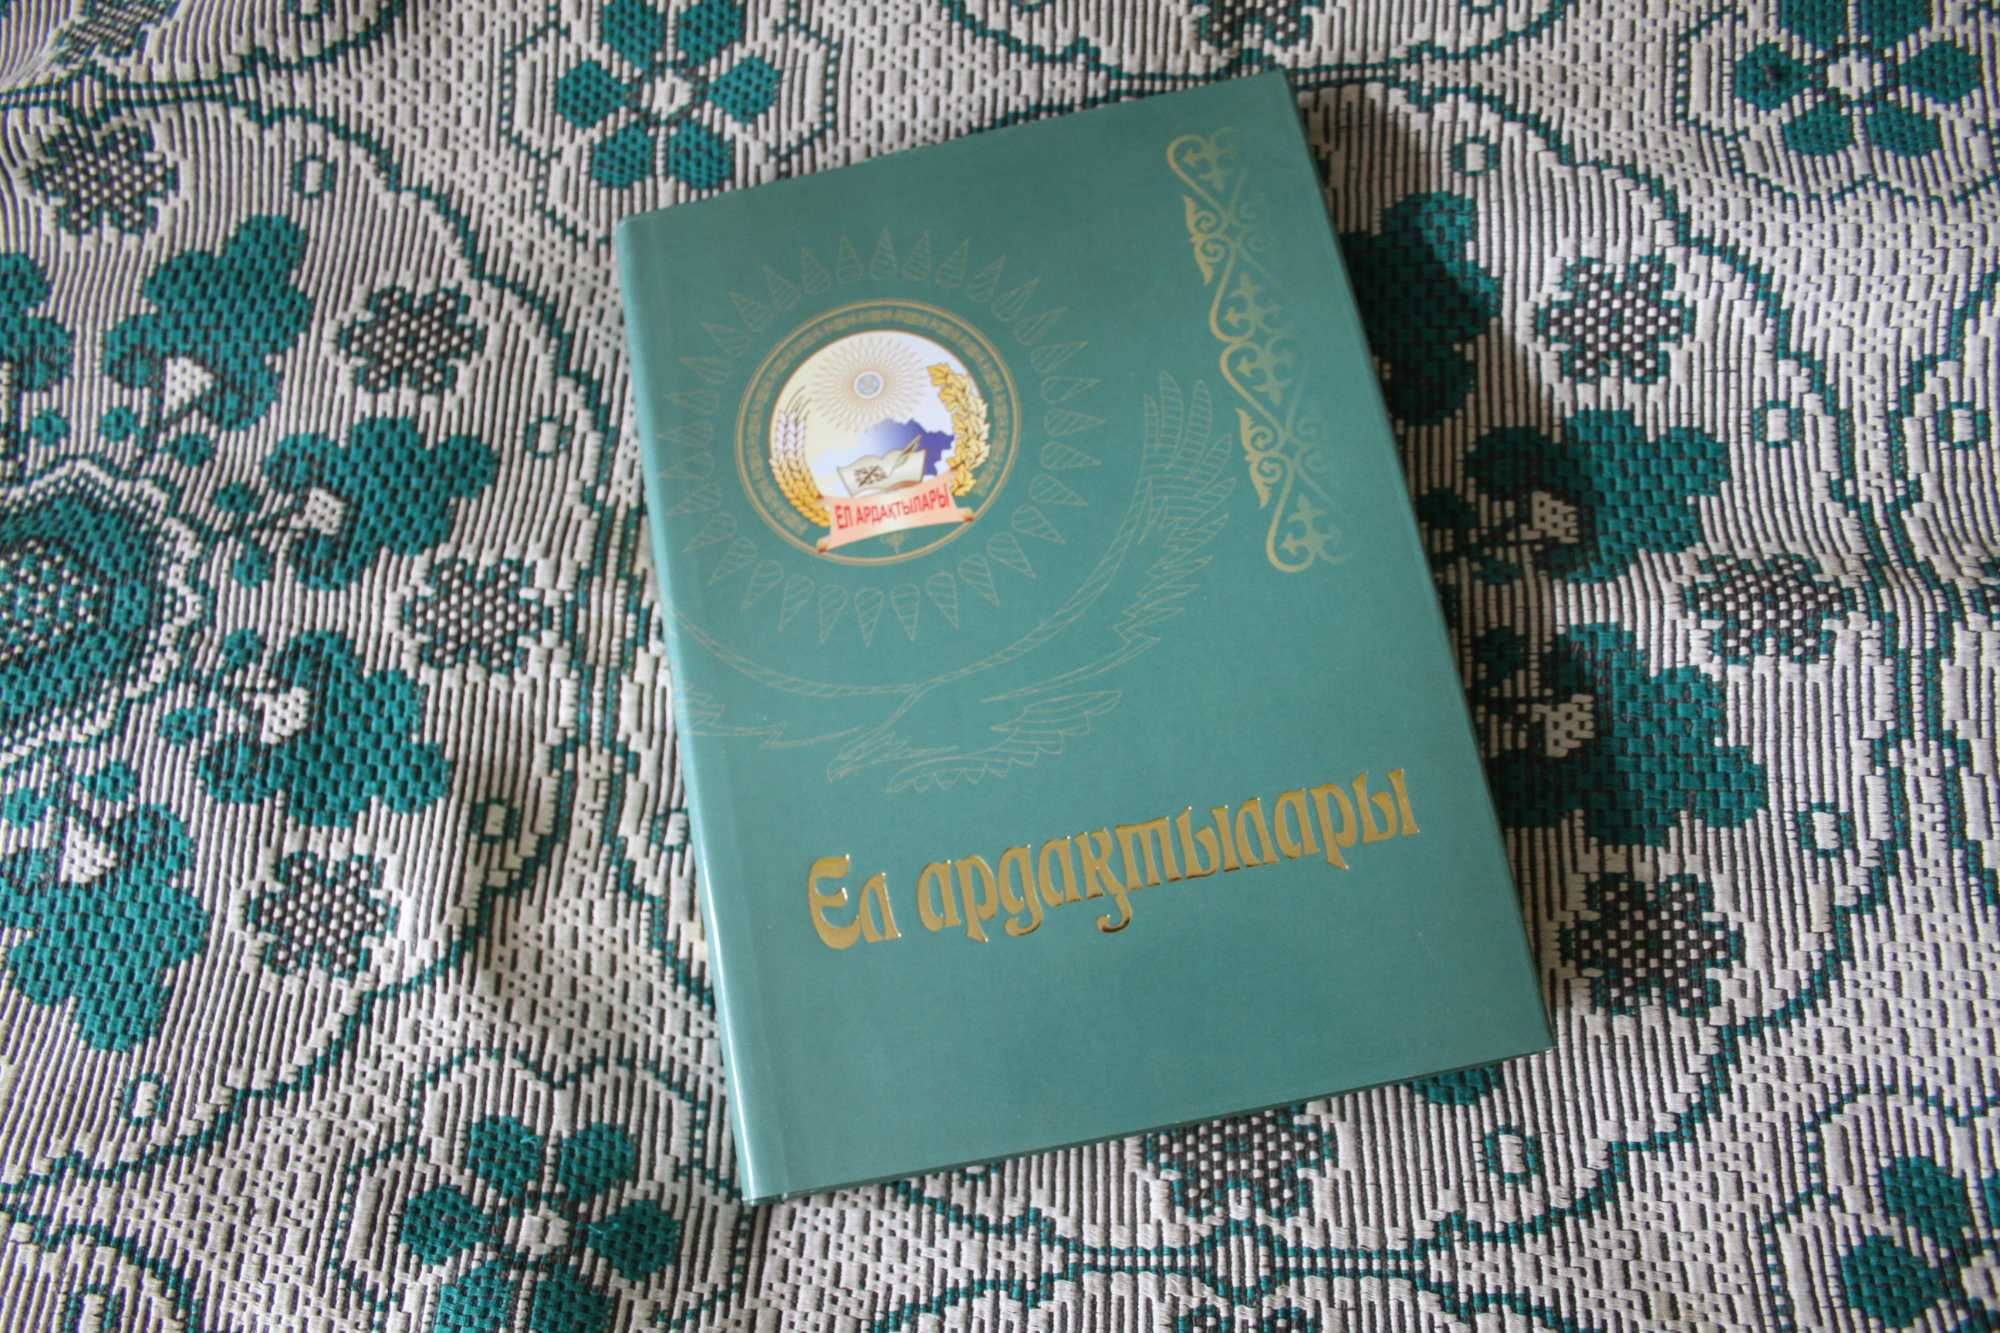 Ел ардактылары книга об уважаемых людях Казахстана